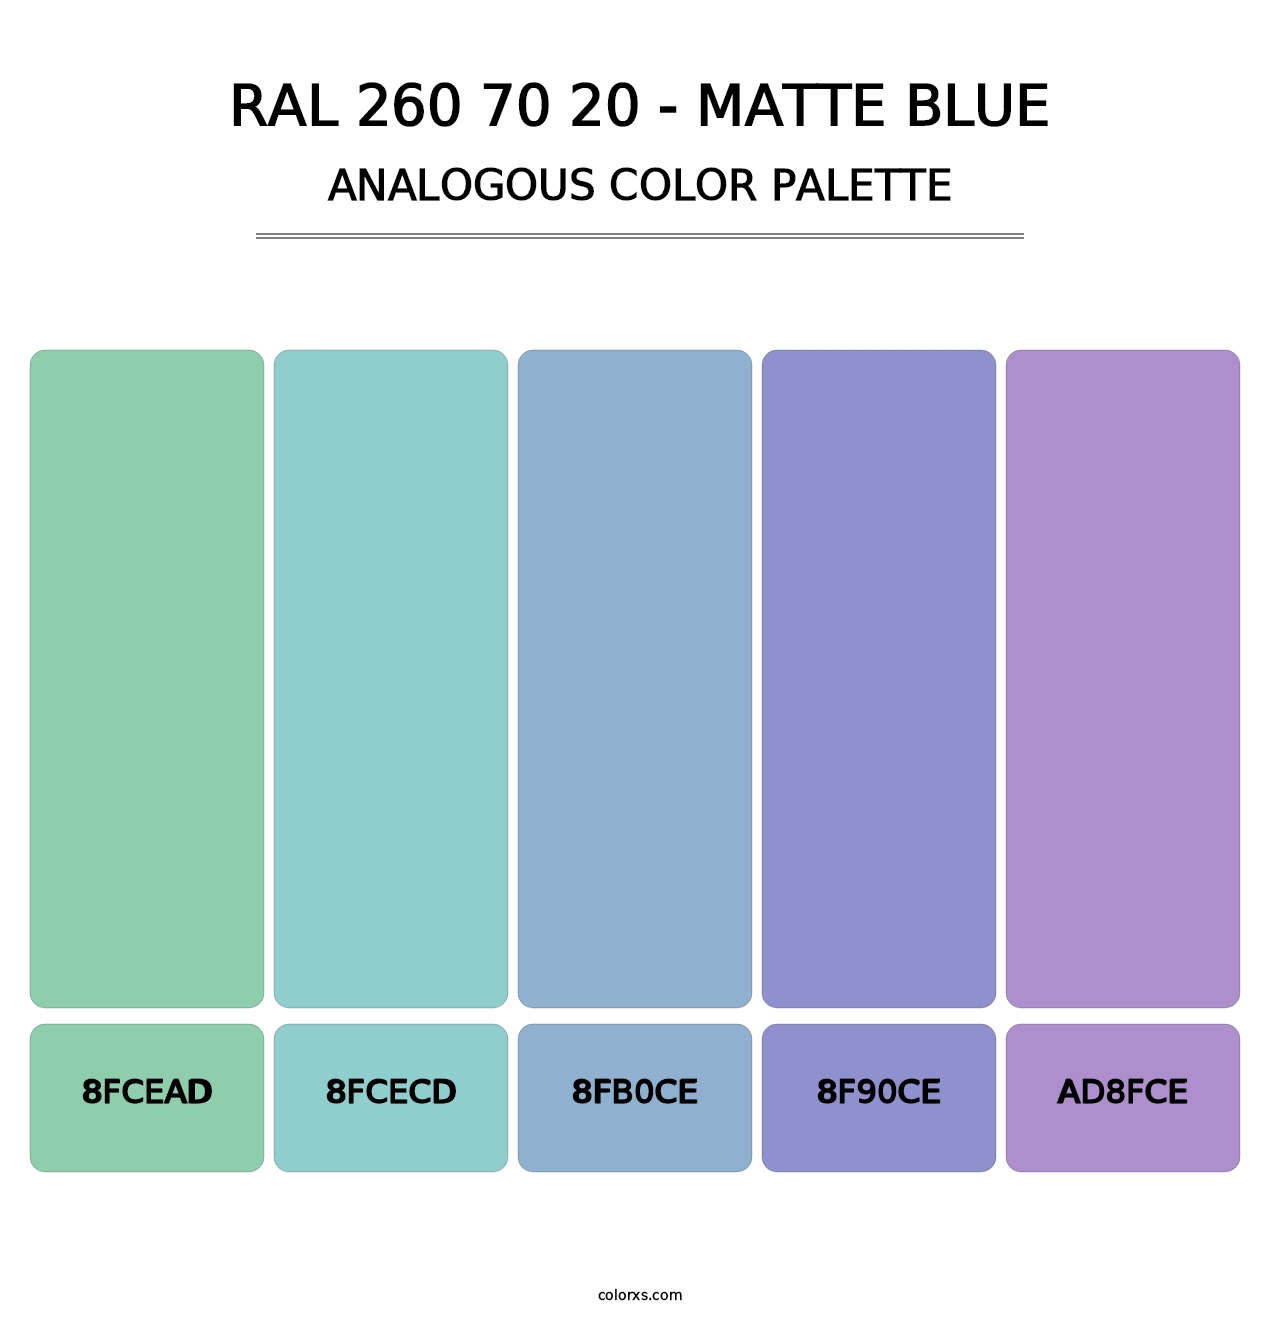 RAL 260 70 20 - Matte Blue - Analogous Color Palette